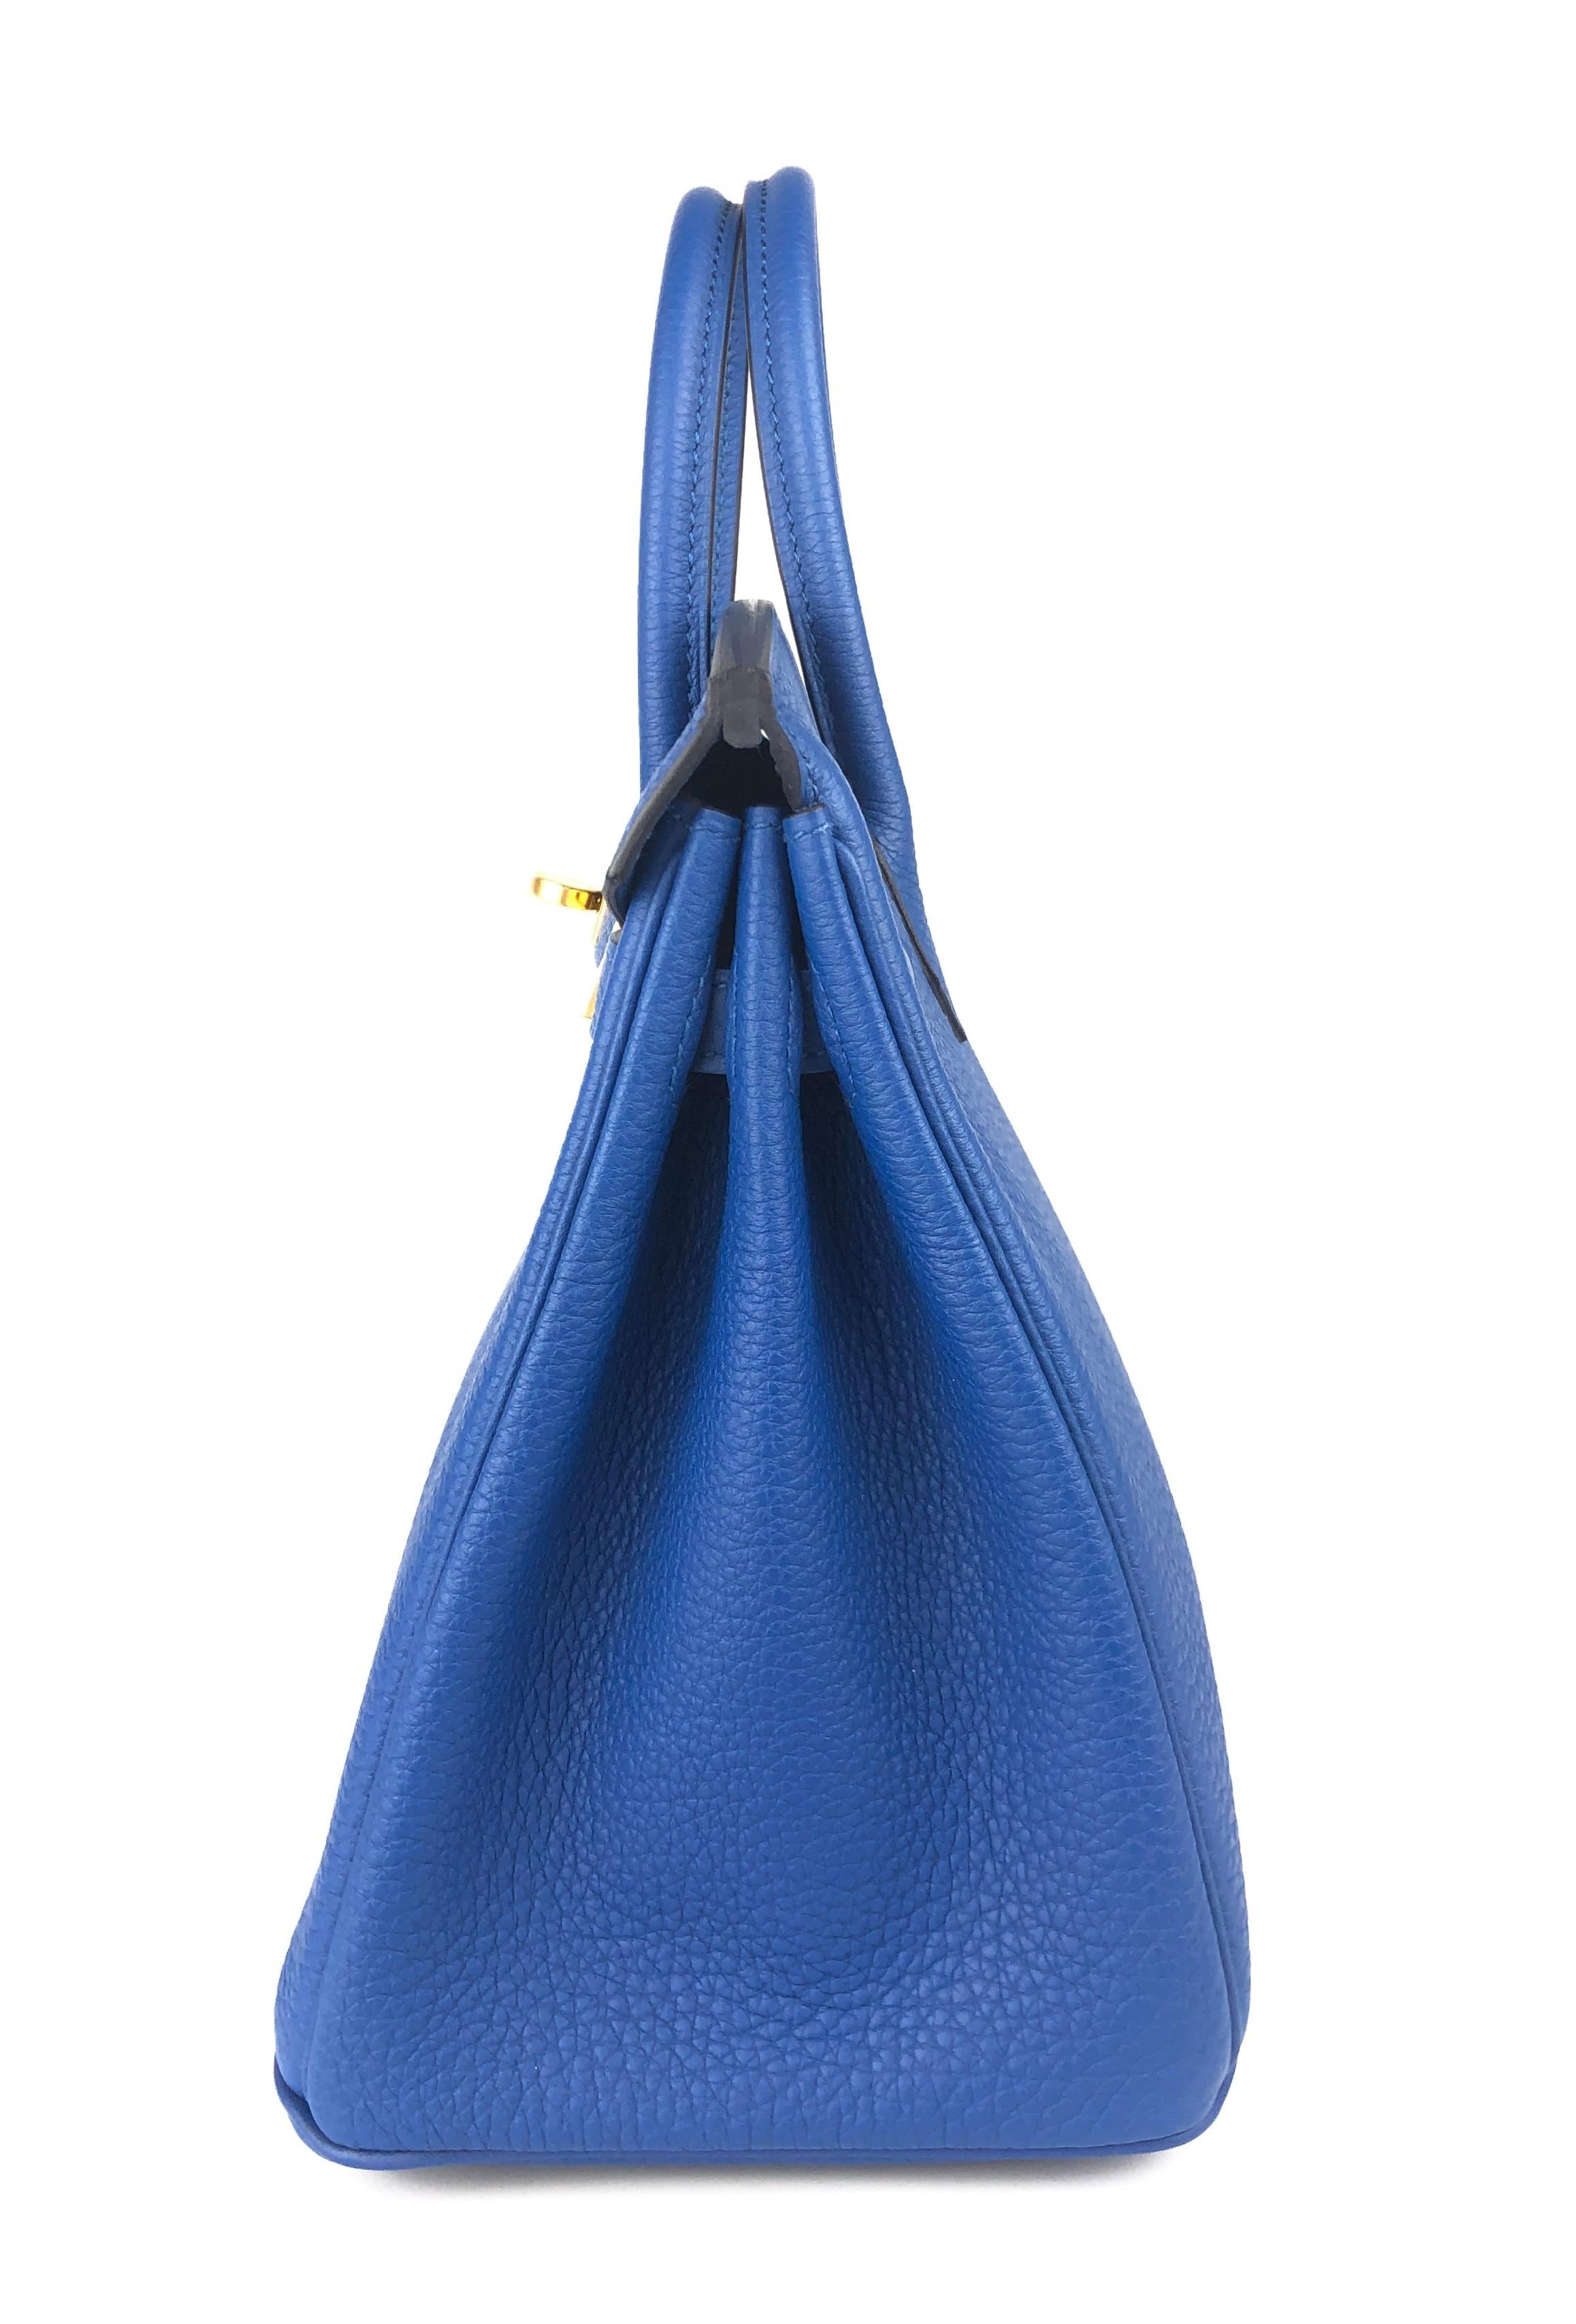 Hermes Birkin 25 Blue Bleu France Togo Leather Handbag Gold Hardware 2022 4